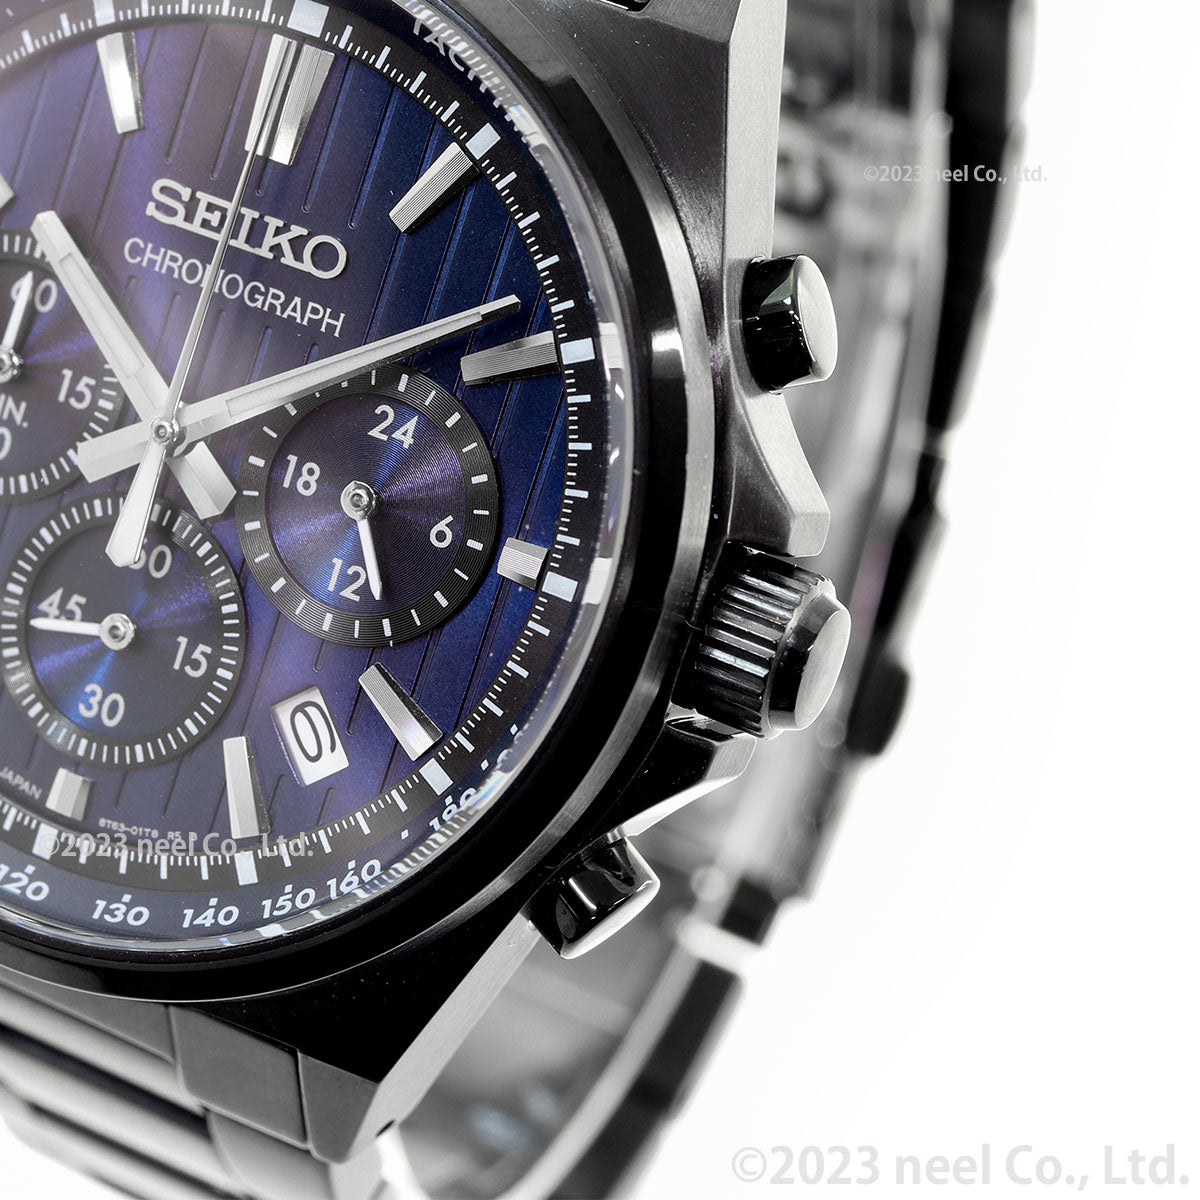 セイコー セレクション SEIKO SELECTION Sシリーズ ショップ専用 流通限定モデル 腕時計 メンズ クロノグラフ SBTR035